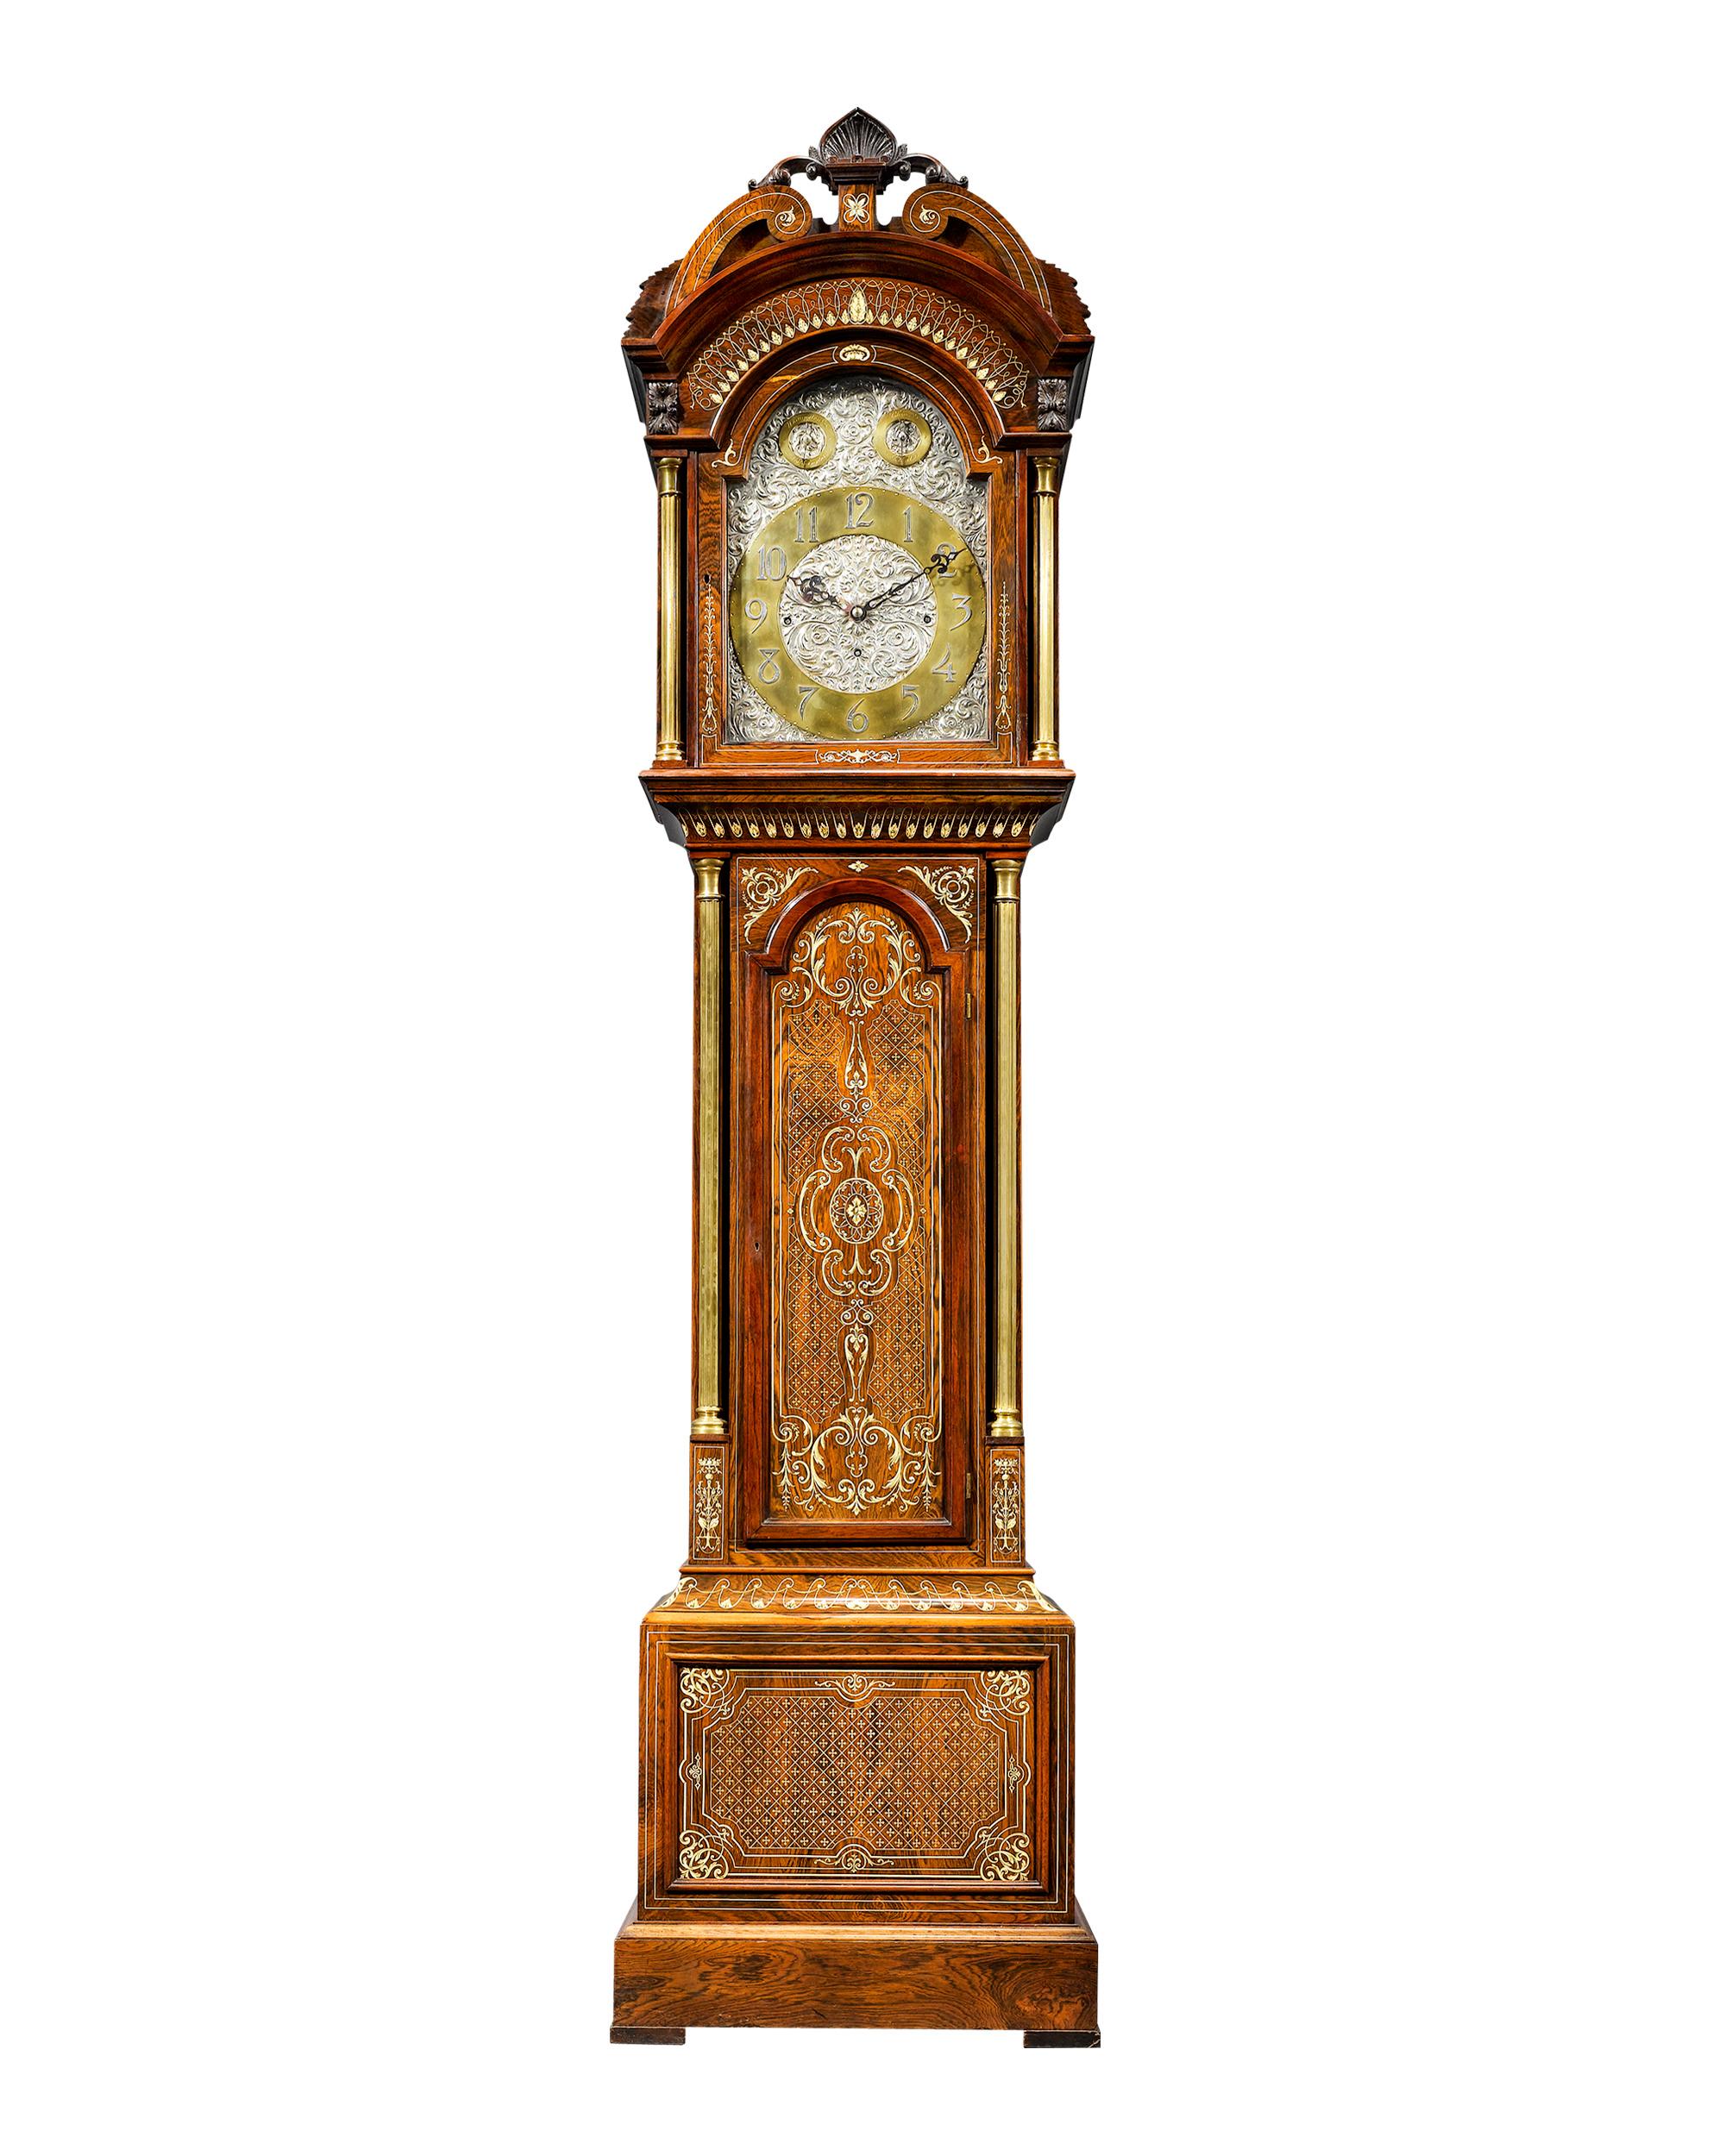 Cette magnifique horloge de parquet anglaise possède un boîtier en bois de rose incrusté d'un motif complexe et équilibré. Le cadran est réalisé en argent ciselé avec un motif de feuillage et des chiffres entièrement poinçonnés par l'orfèvre